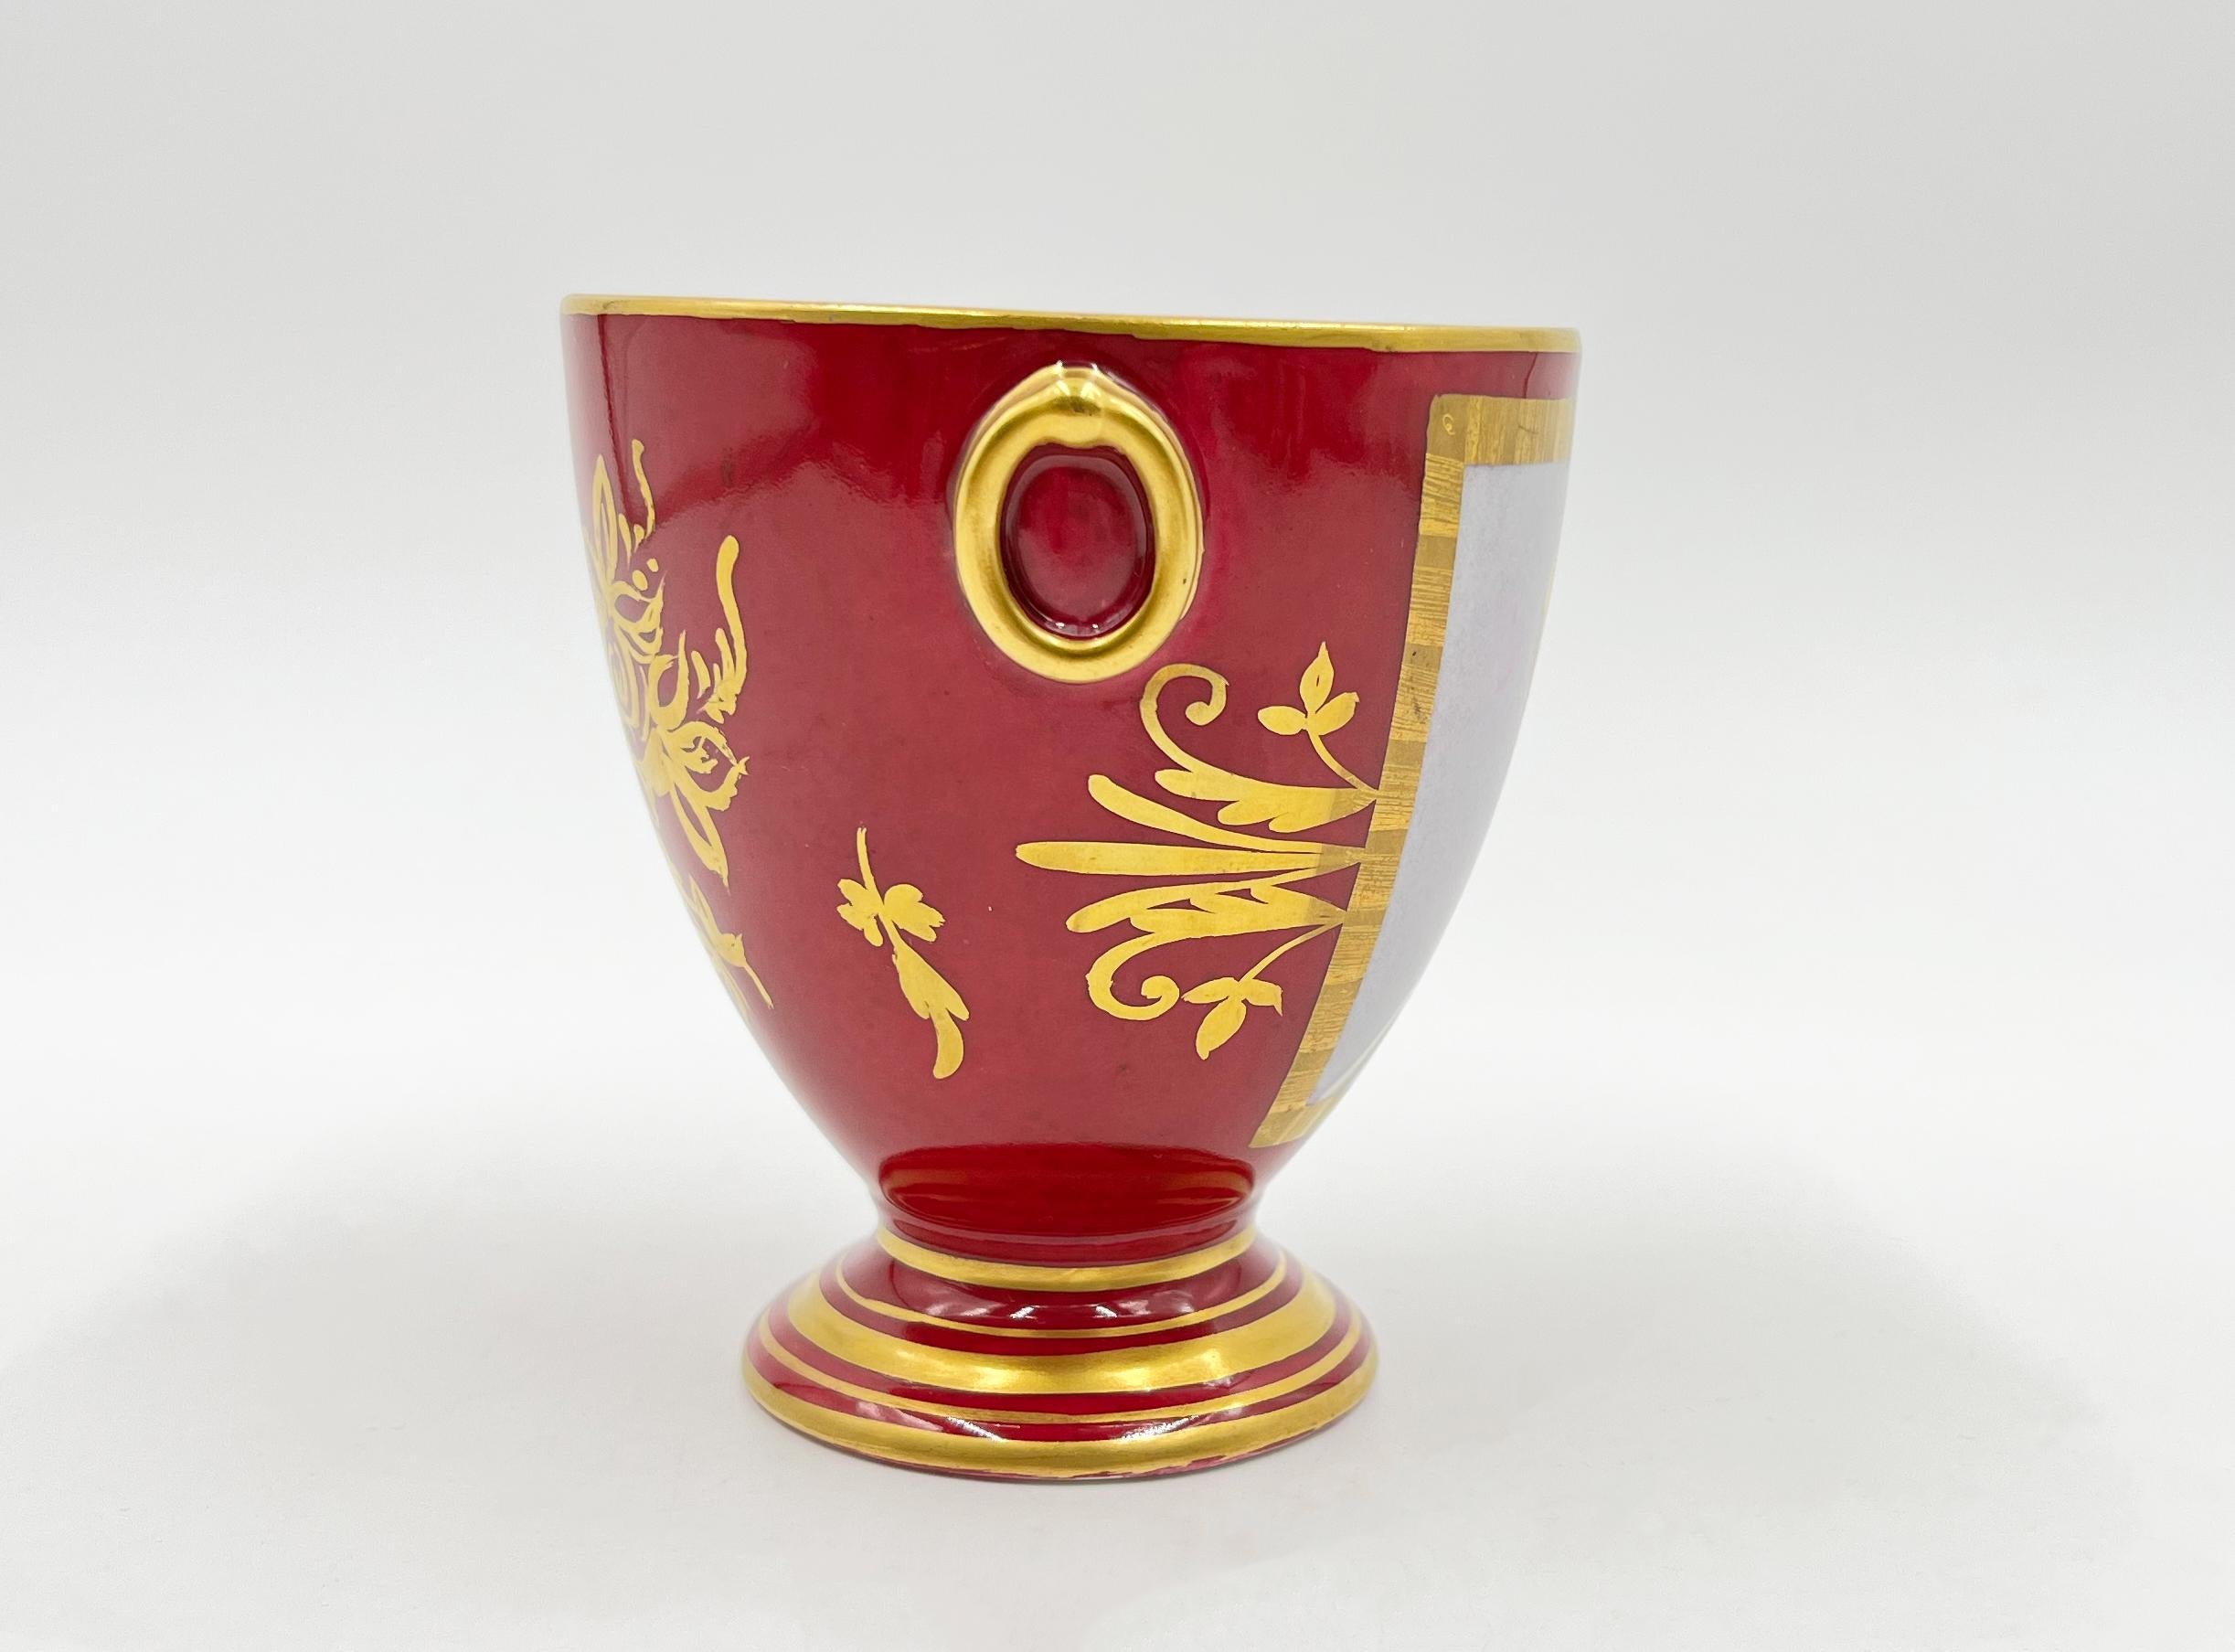 19th Century Paris Porcelain Tea Set Featuring Napoleonic Portraits For Sale 3